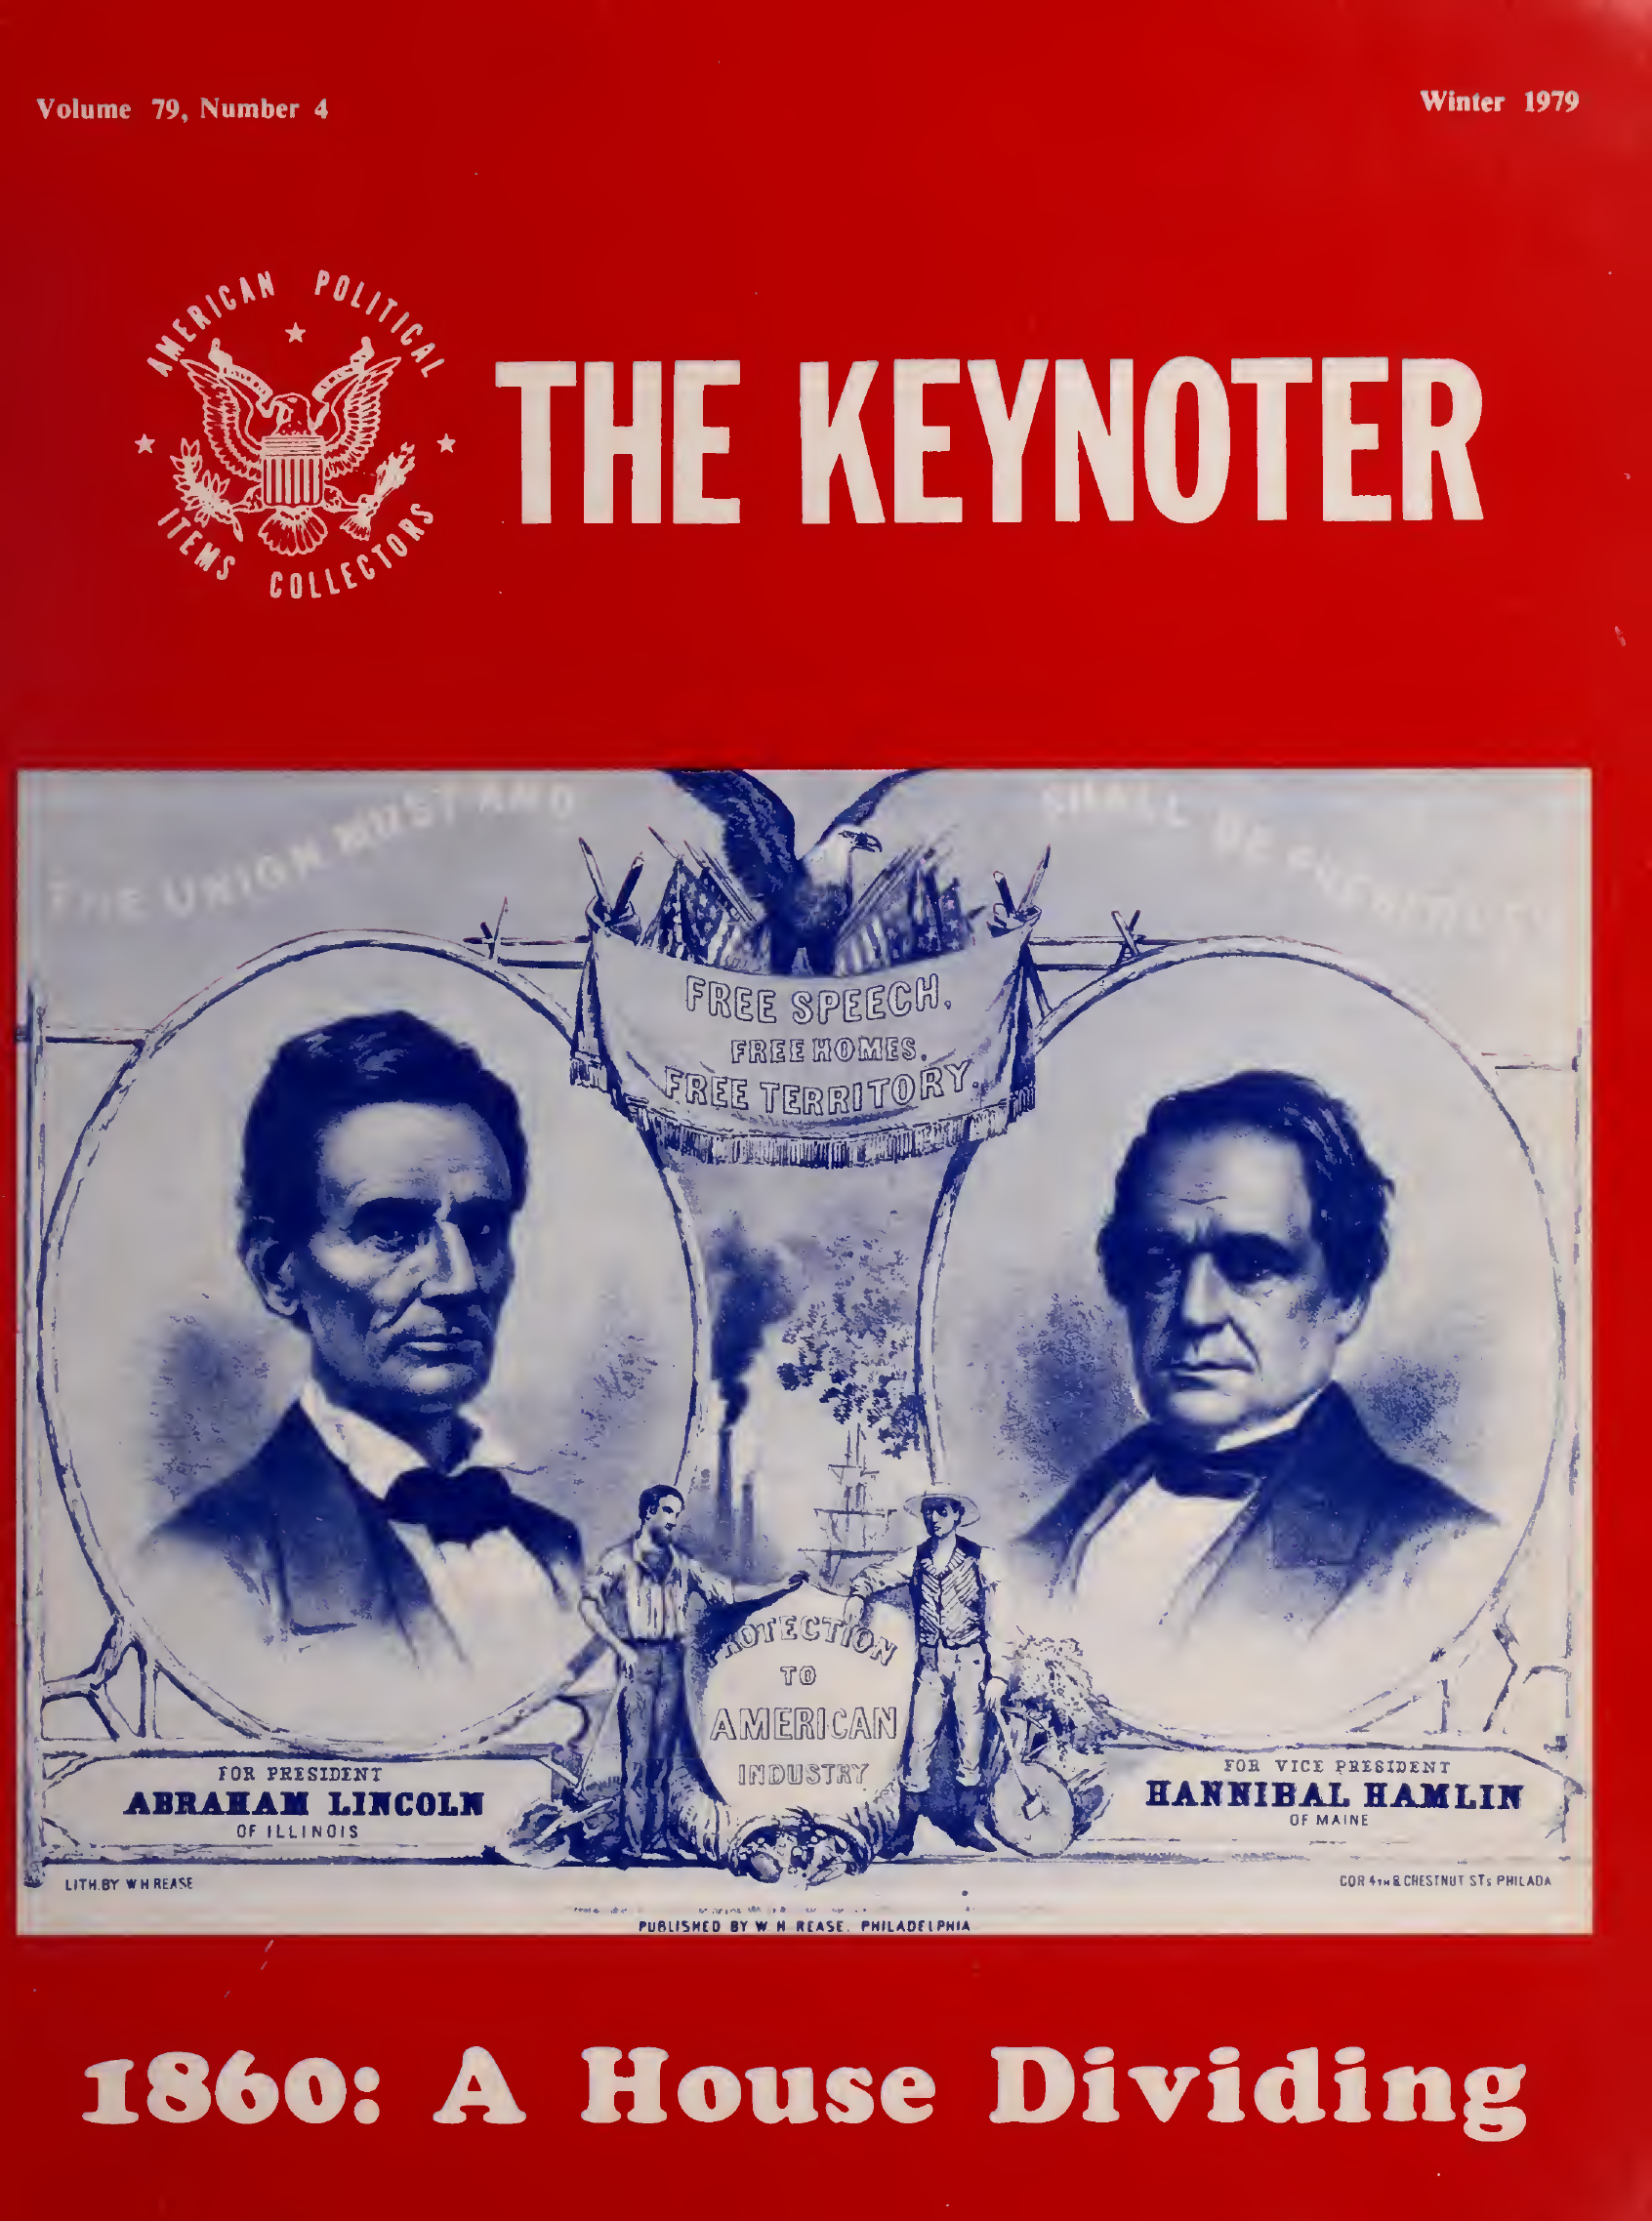 Keynoter 1979 - Winter - Issue 4